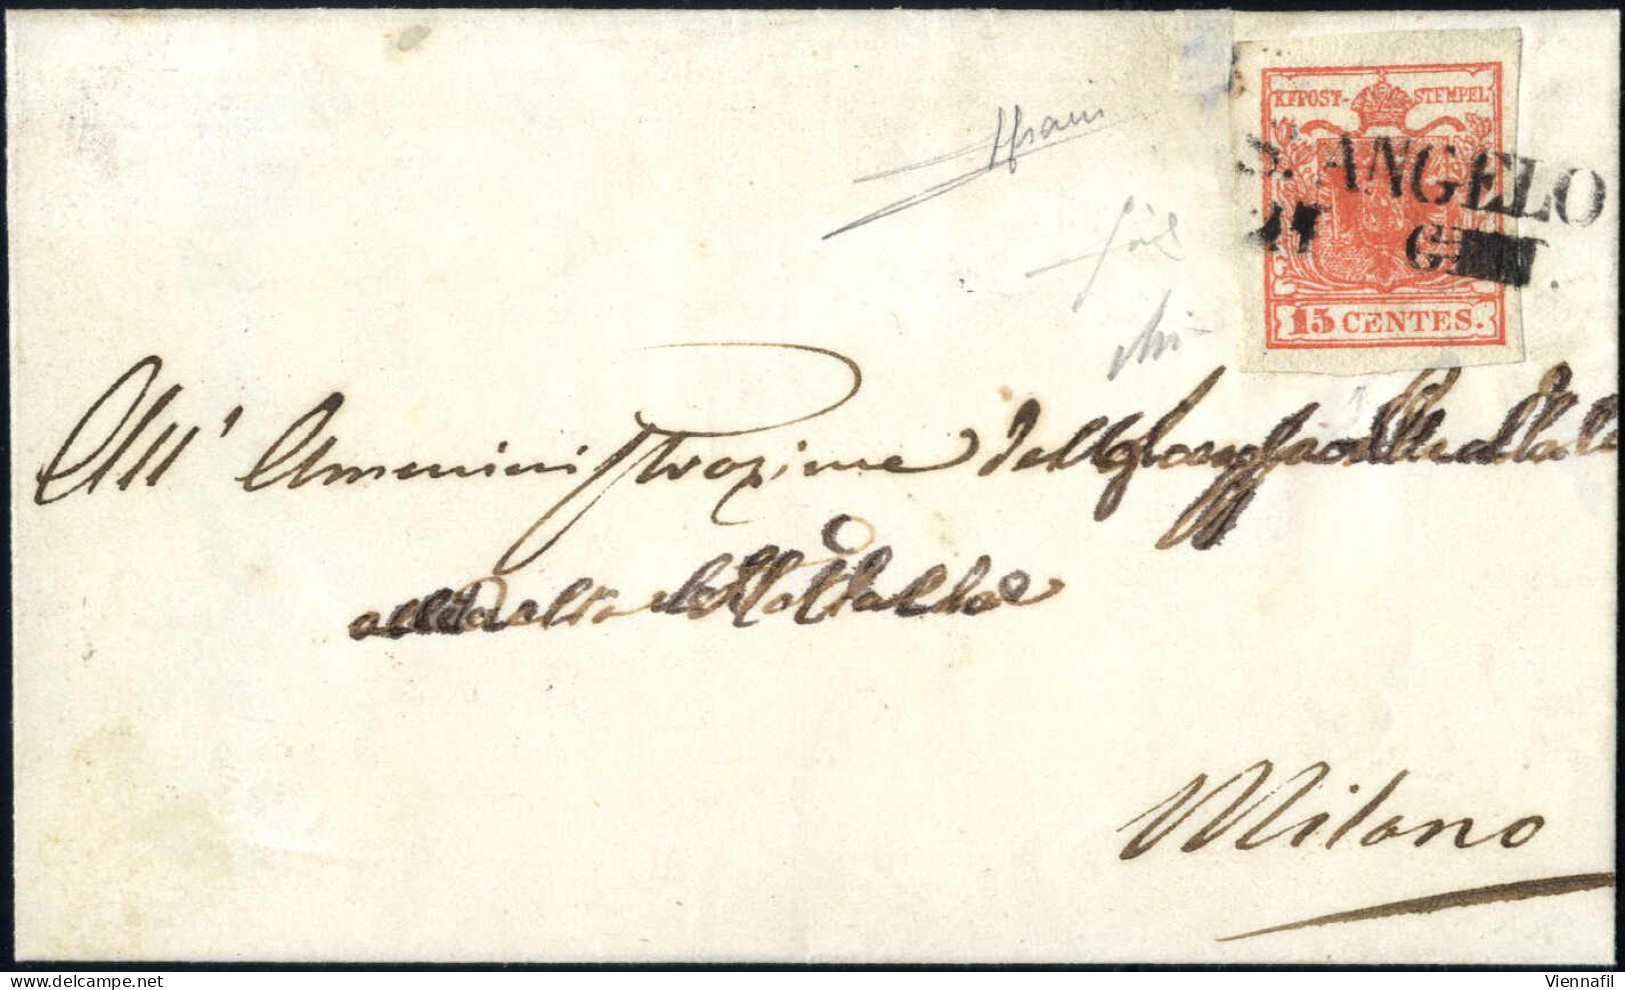 Cover St. Angelo, SD Punti 13, Lettera Del 12.10.1850 Per Padova Affrancata Con 15 C. Rosso Vermiglio I Tipo Carta A Man - Lombardo-Vénétie